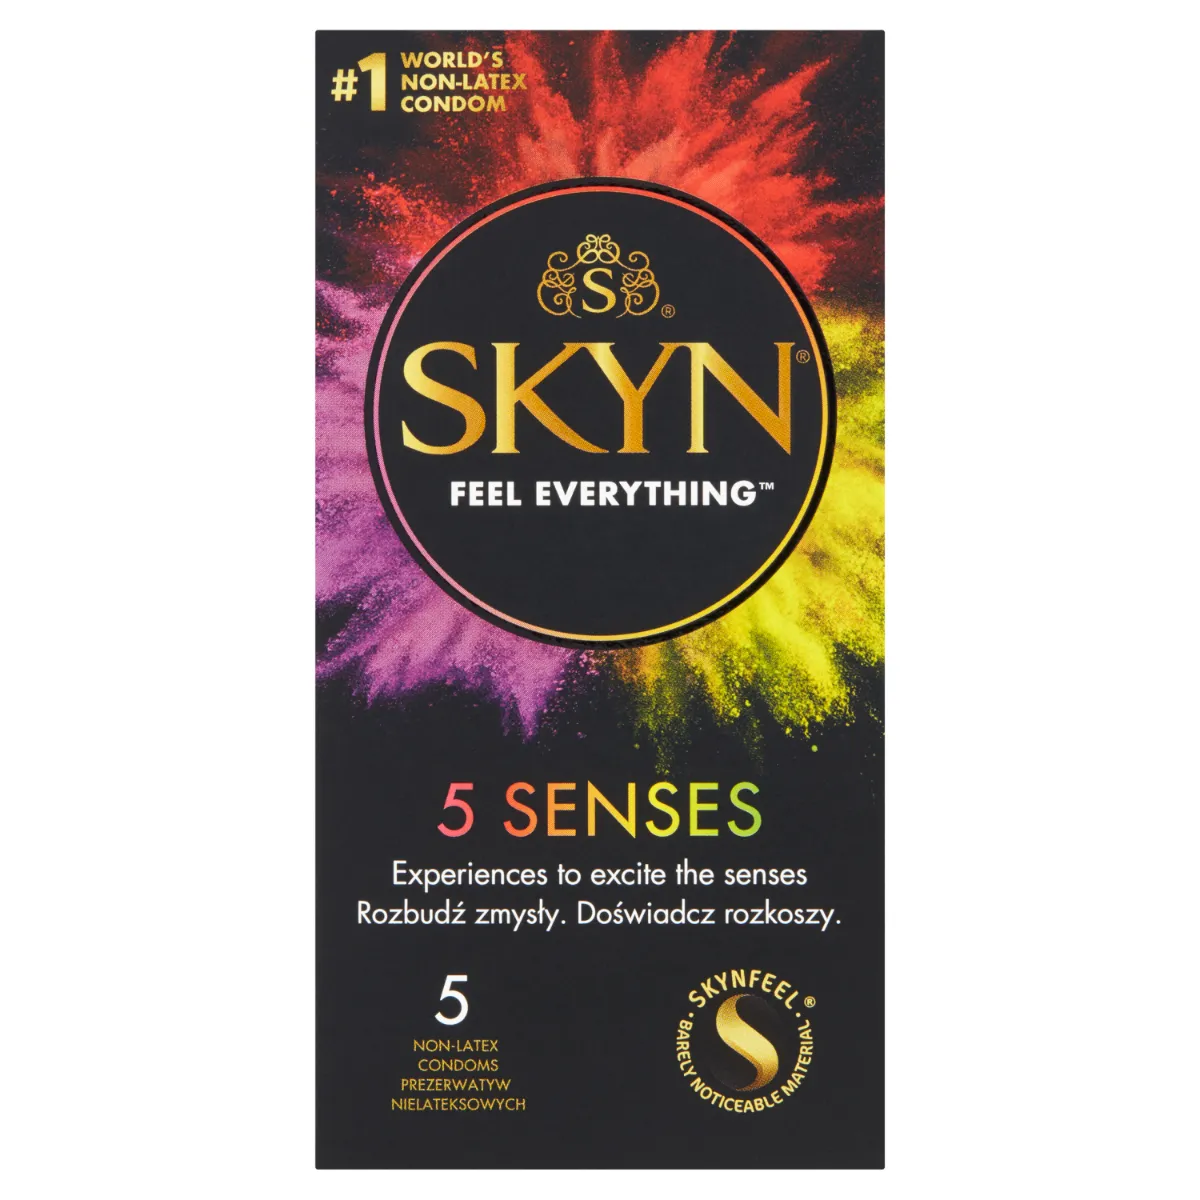 SKYN 5 Senses nielateksowe prezerwatywy – 5 rodzajów, 5 szt.